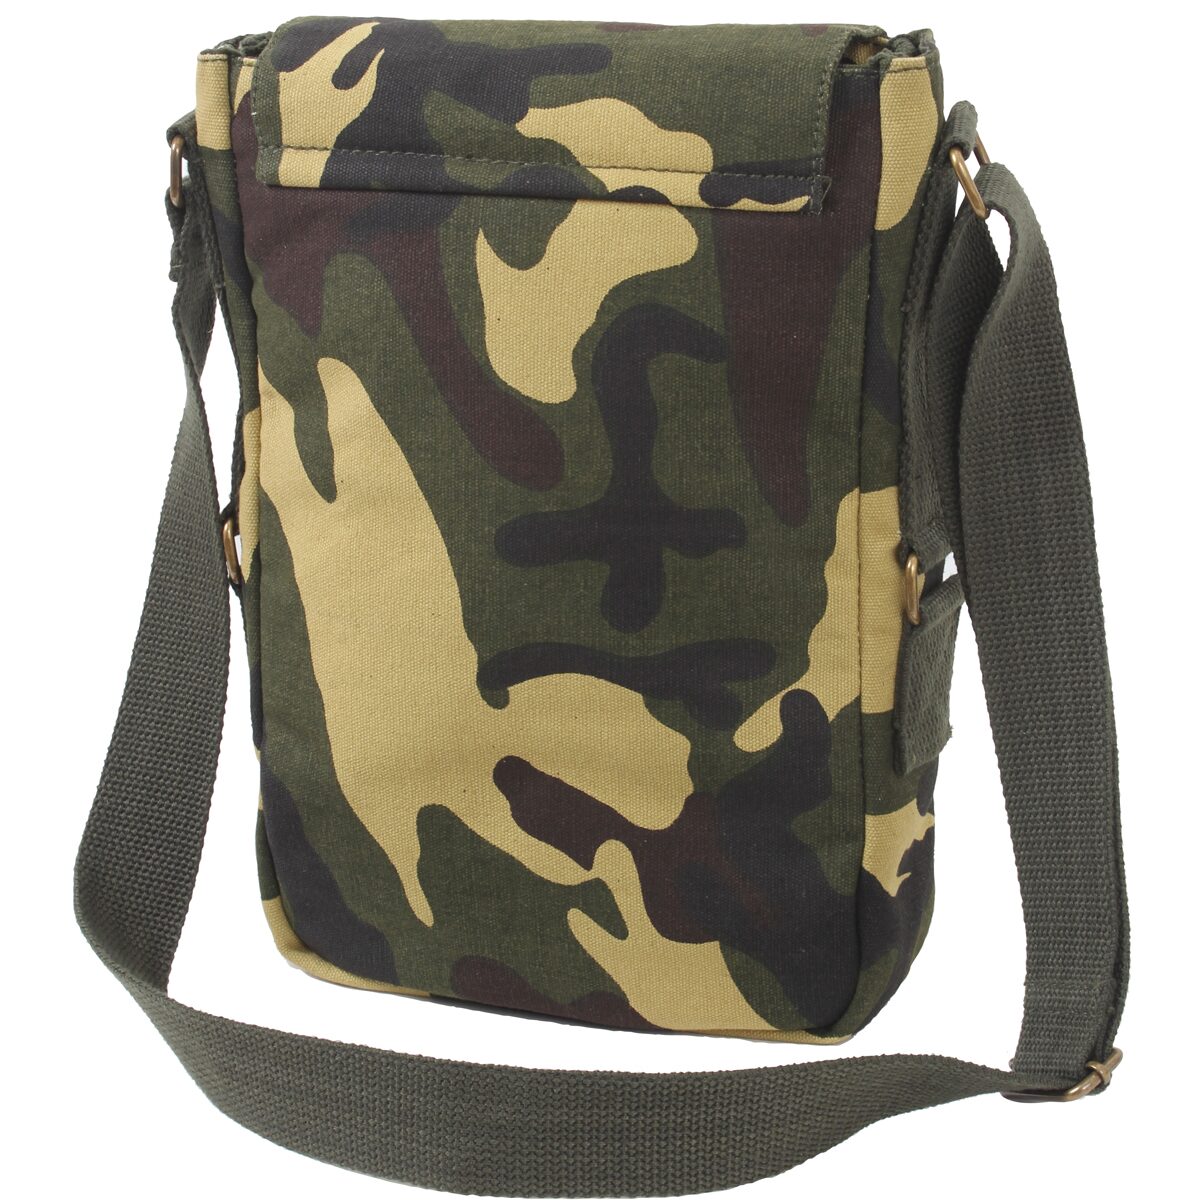 Woodland Camo Canvas Military Tech Bag